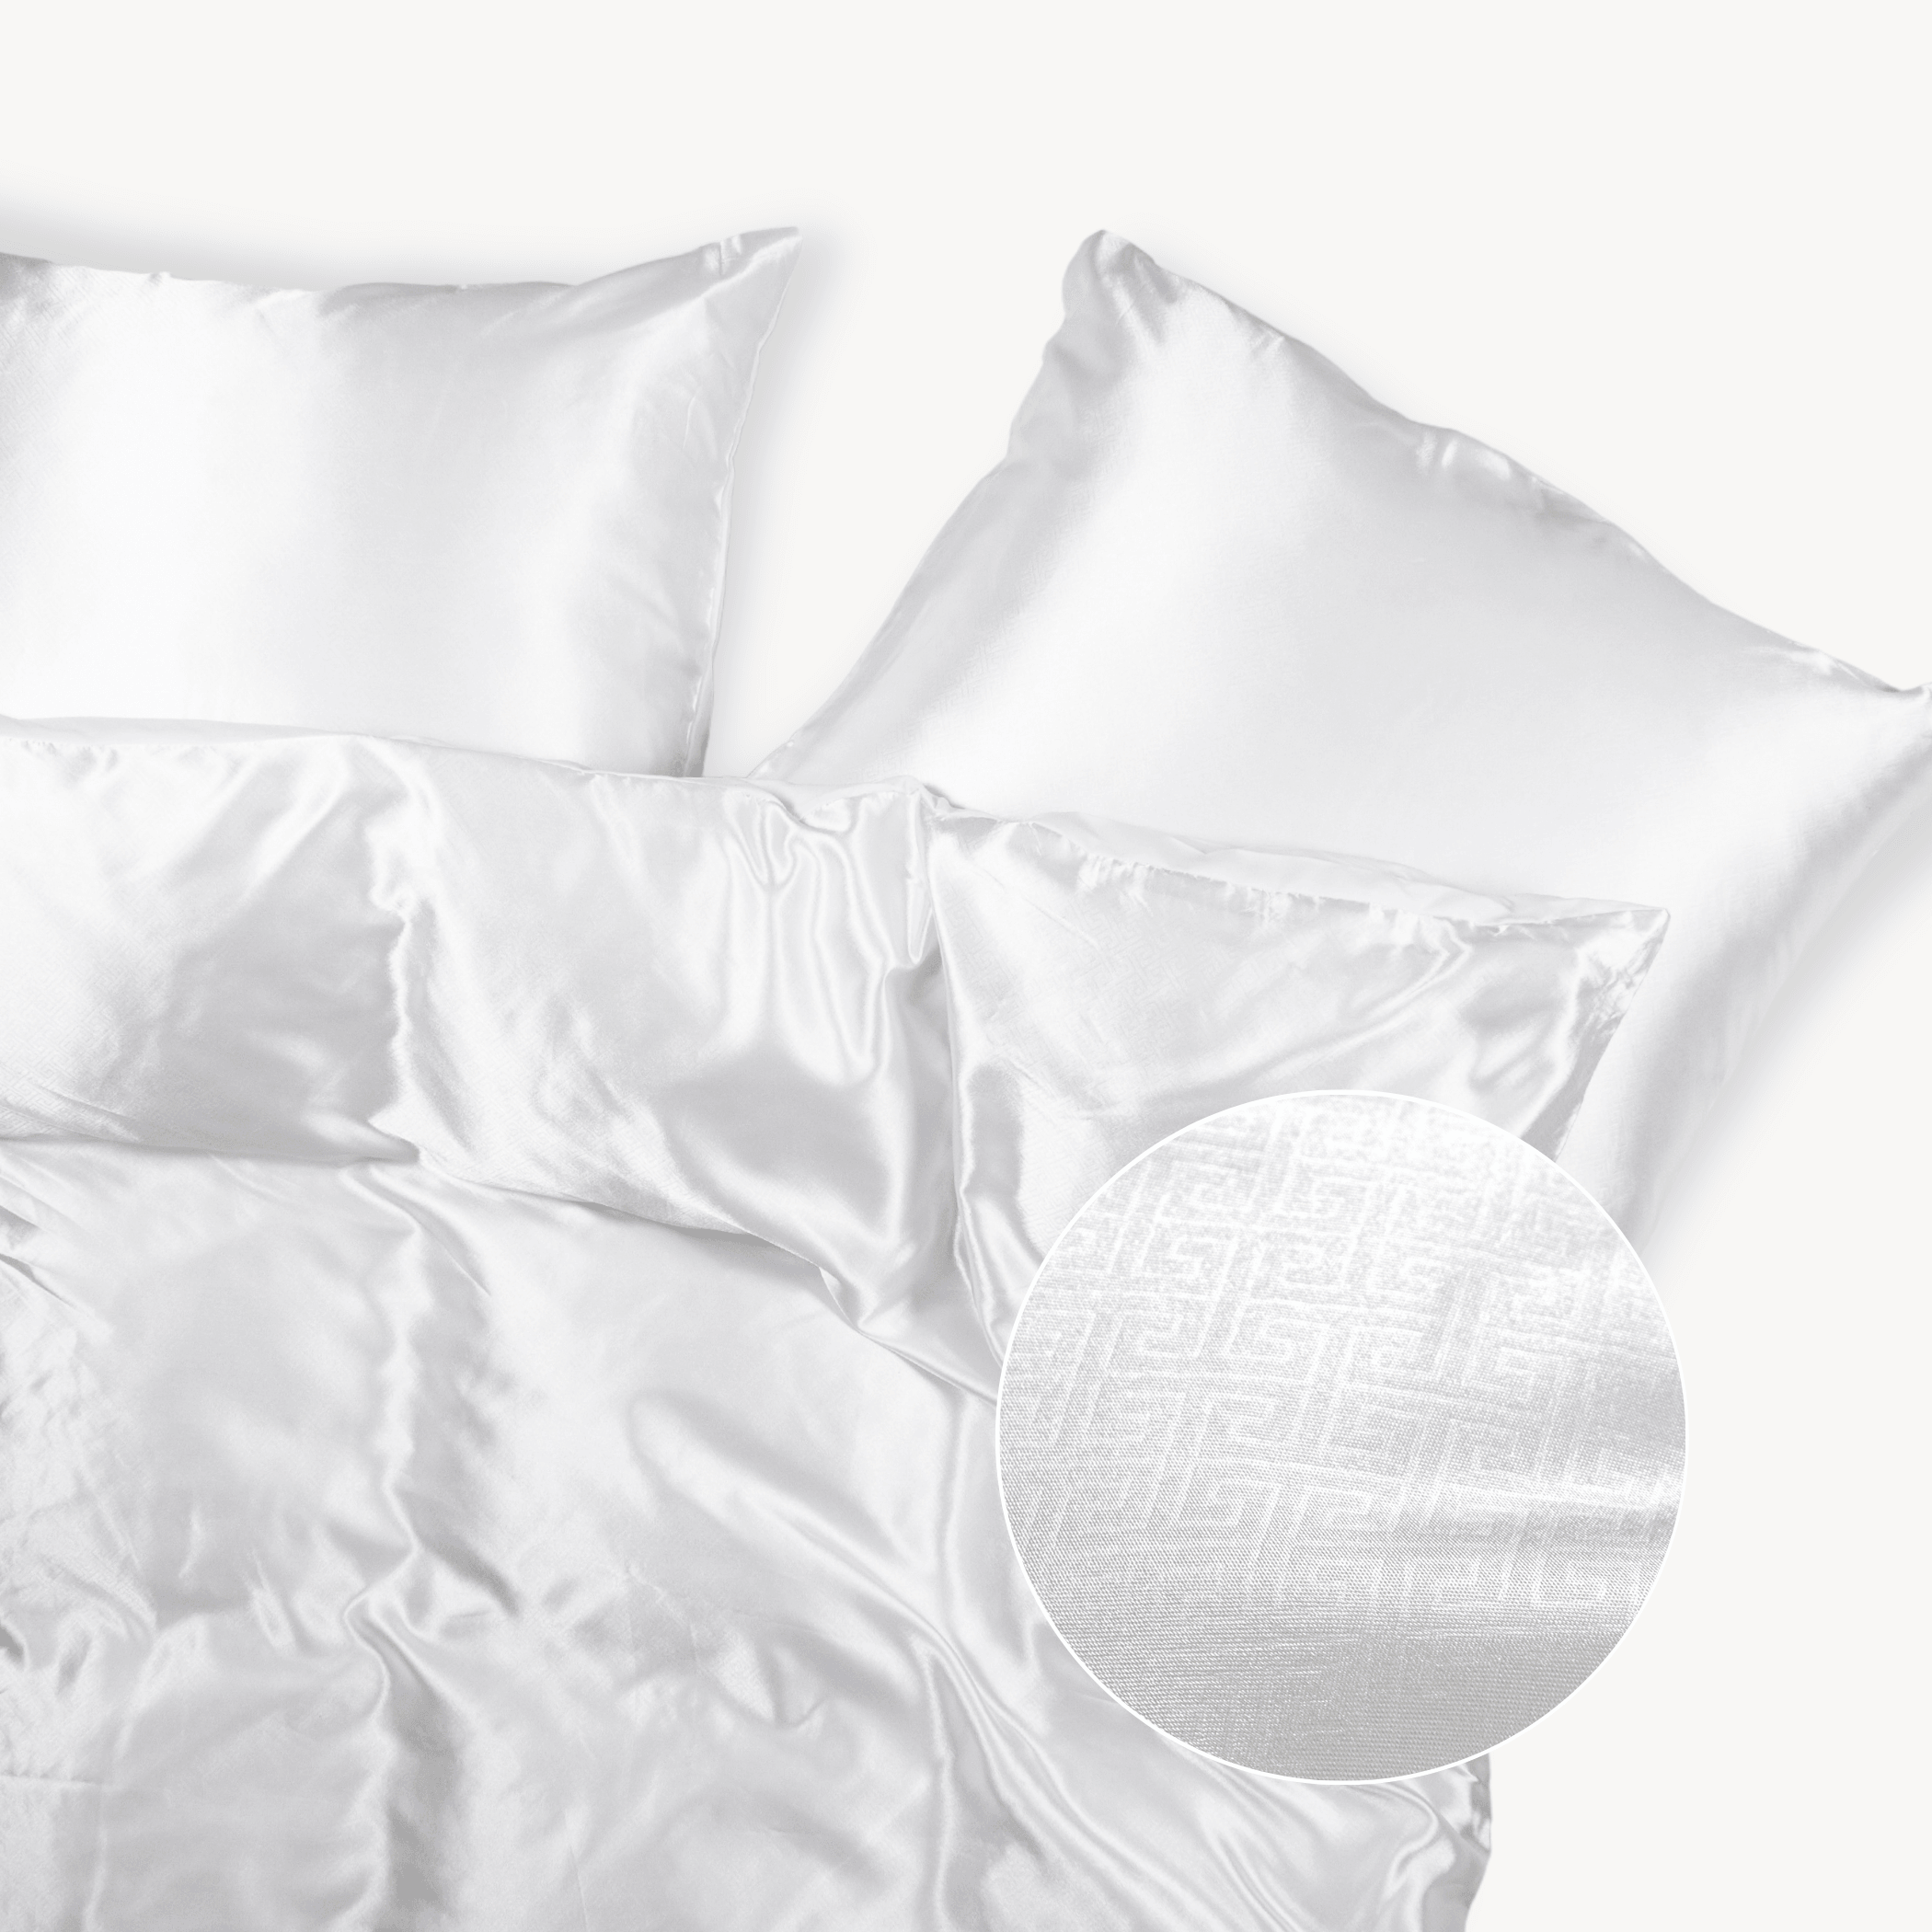 zin versieren gerucht Satijnen dekbedovertrek wit effen met motief | luxe slaapkamerlook